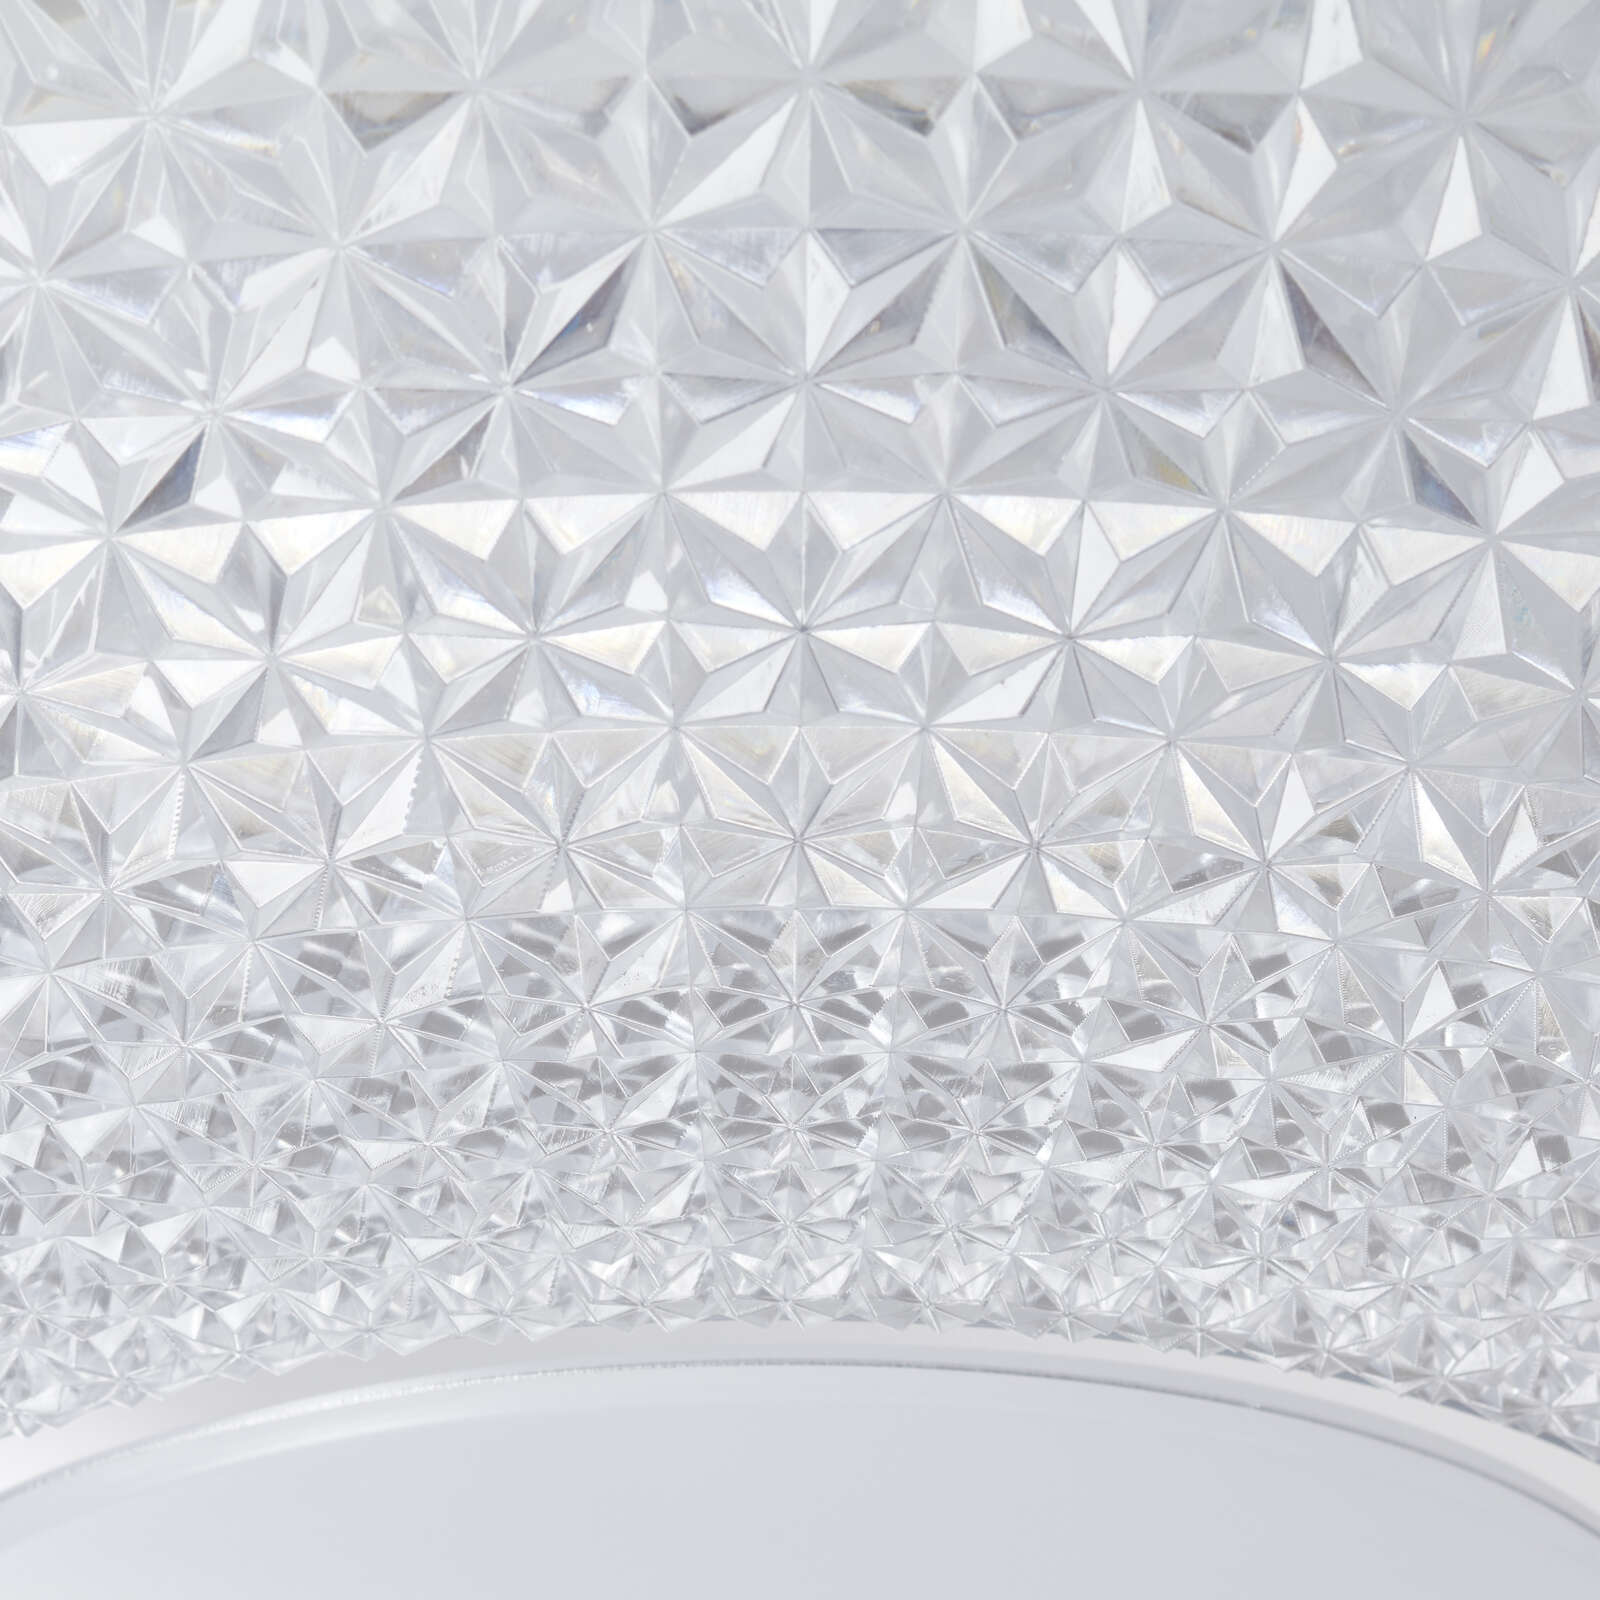             Plastic ceiling light - Luke 2 - Metallic
        